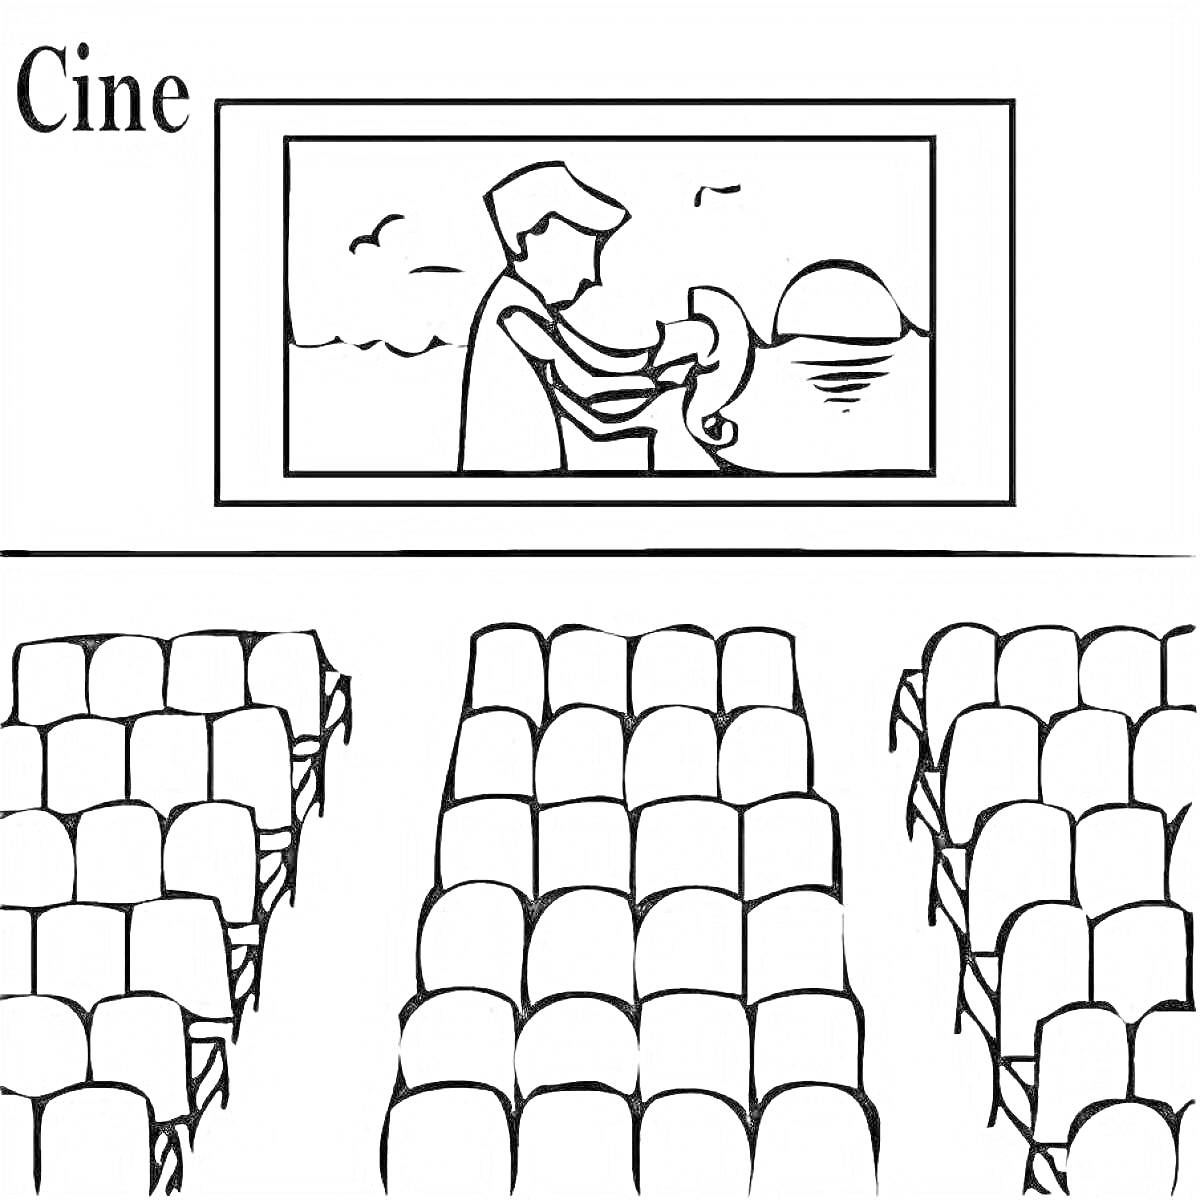 Кинотеатр с экраном, показывающим сцену с человеком и животным на пляже, сидения в залом.